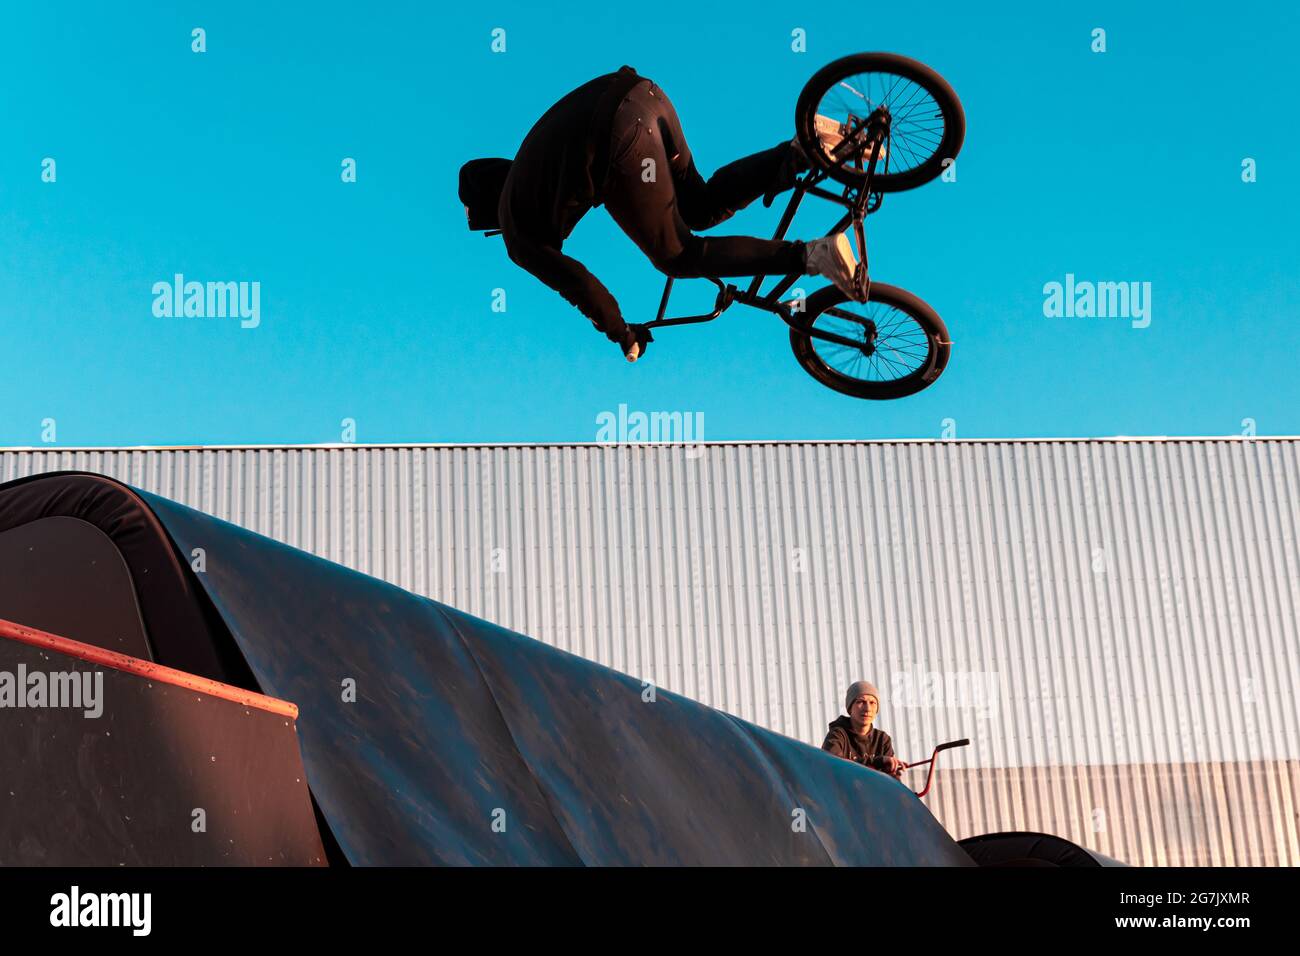 Kazan, Russland - 12. September 2020: Ein BMX-Fahrer macht einen Stunt auf  einer Rampe in einem Skatepark im öffentlichen Park der Stadt für  Outdoor-Aktivitäten Stockfotografie - Alamy